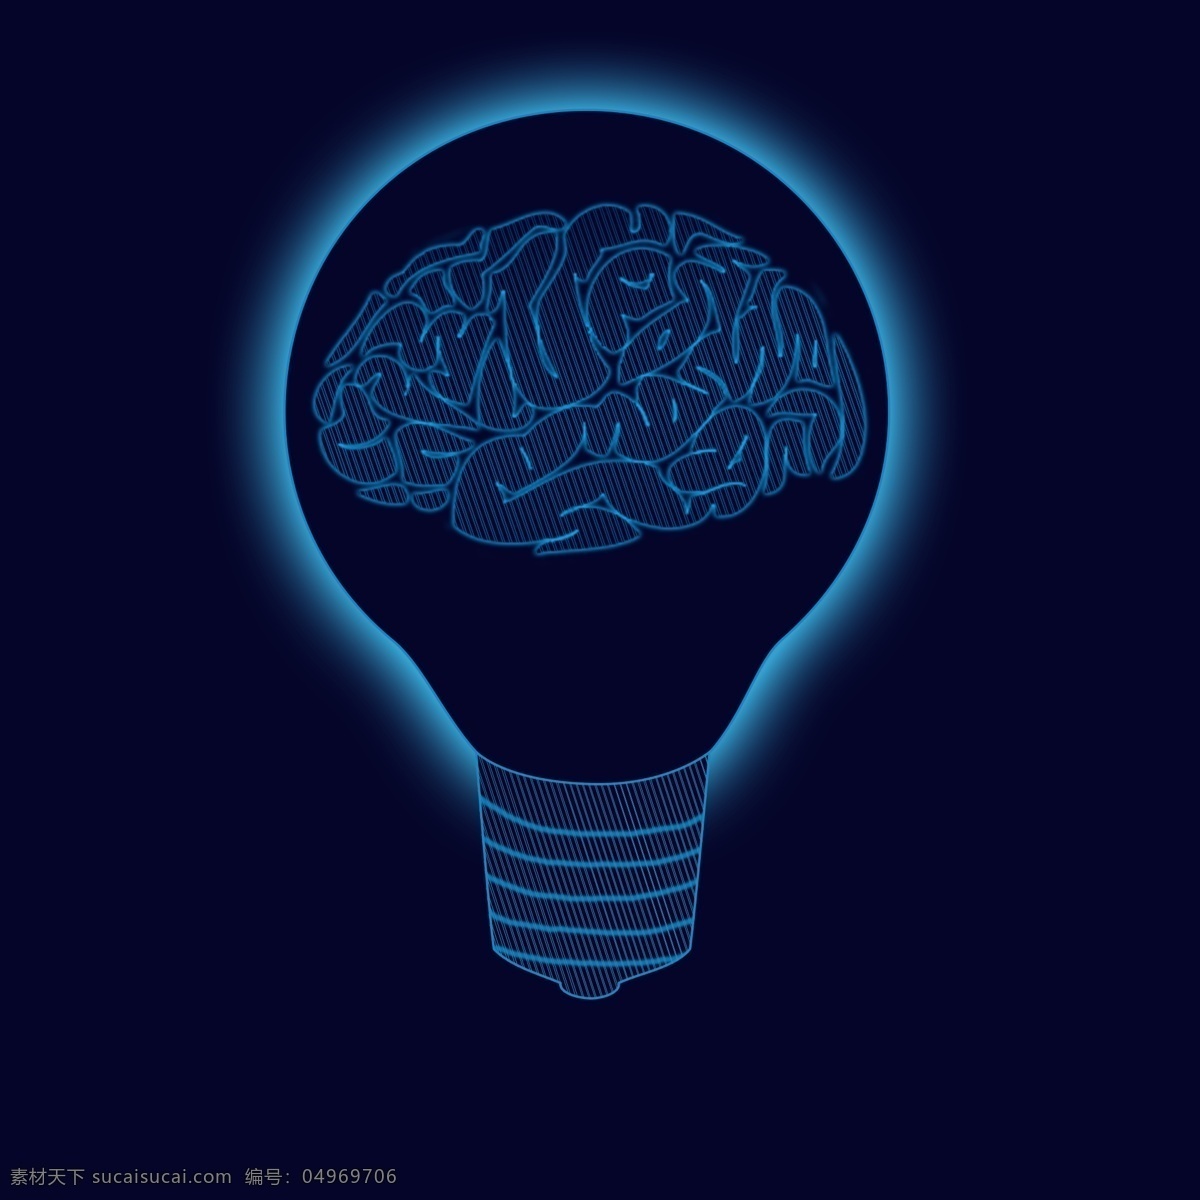 原创 智慧 大脑 元素 科技感 智能 电灯